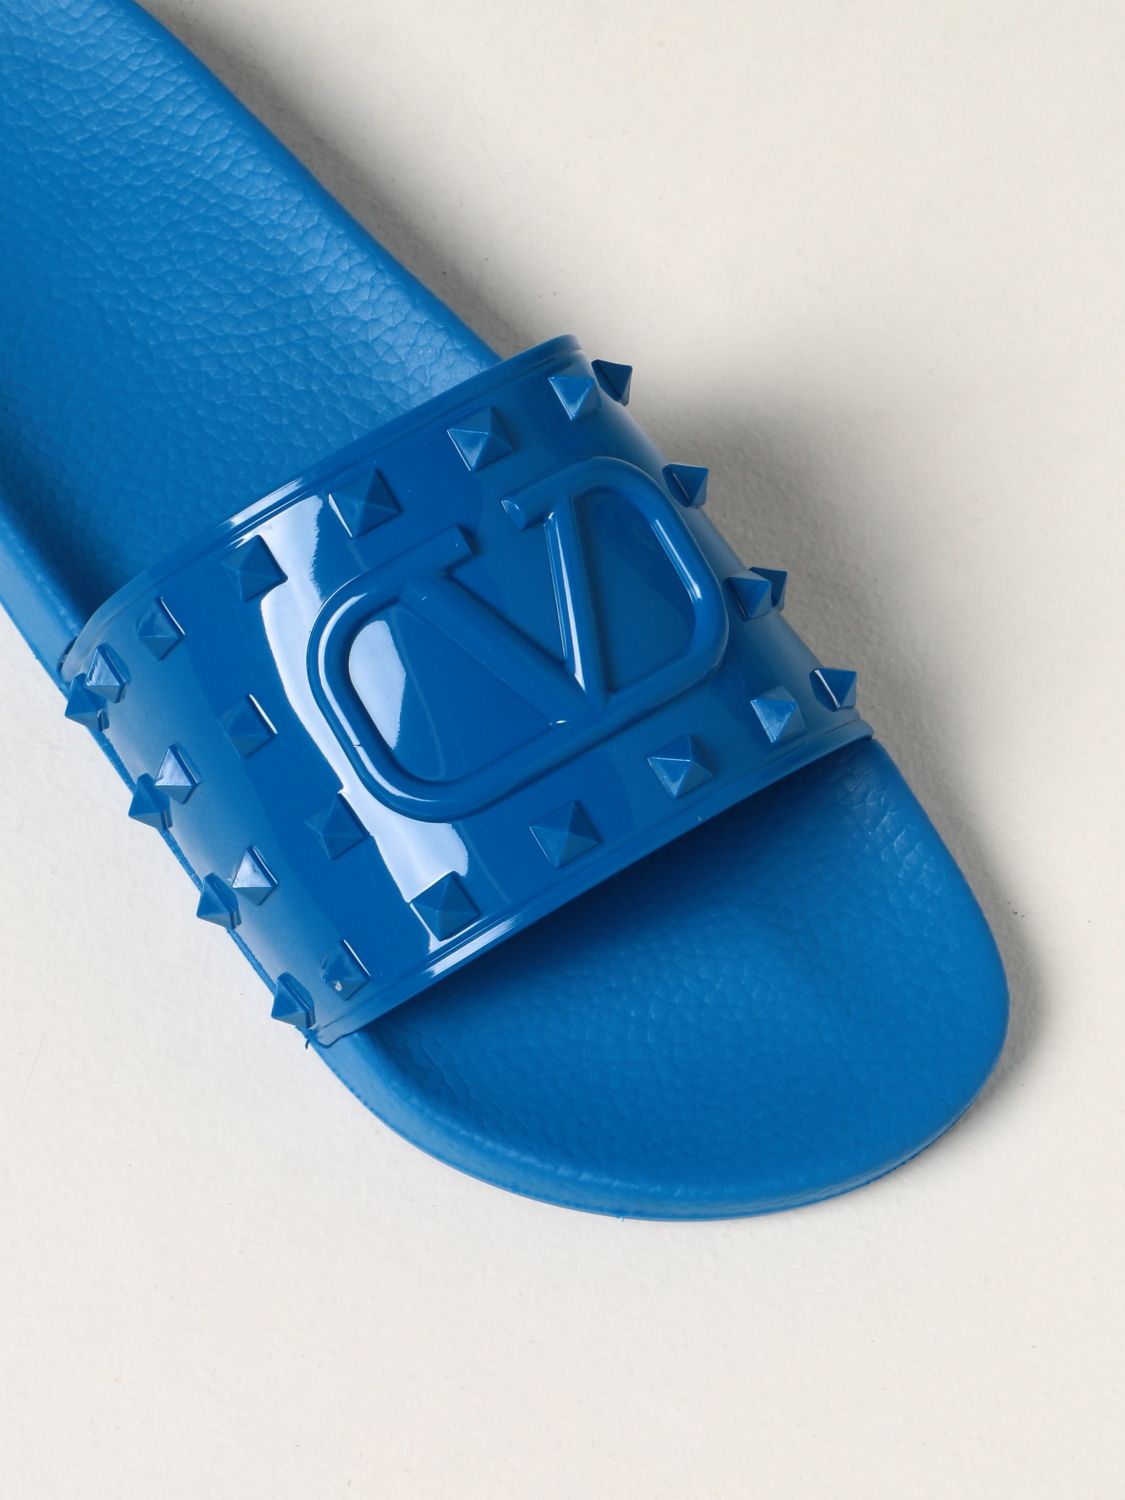 VALENTINO GARAVANI: Summer rubber slide sandals | Sandals 